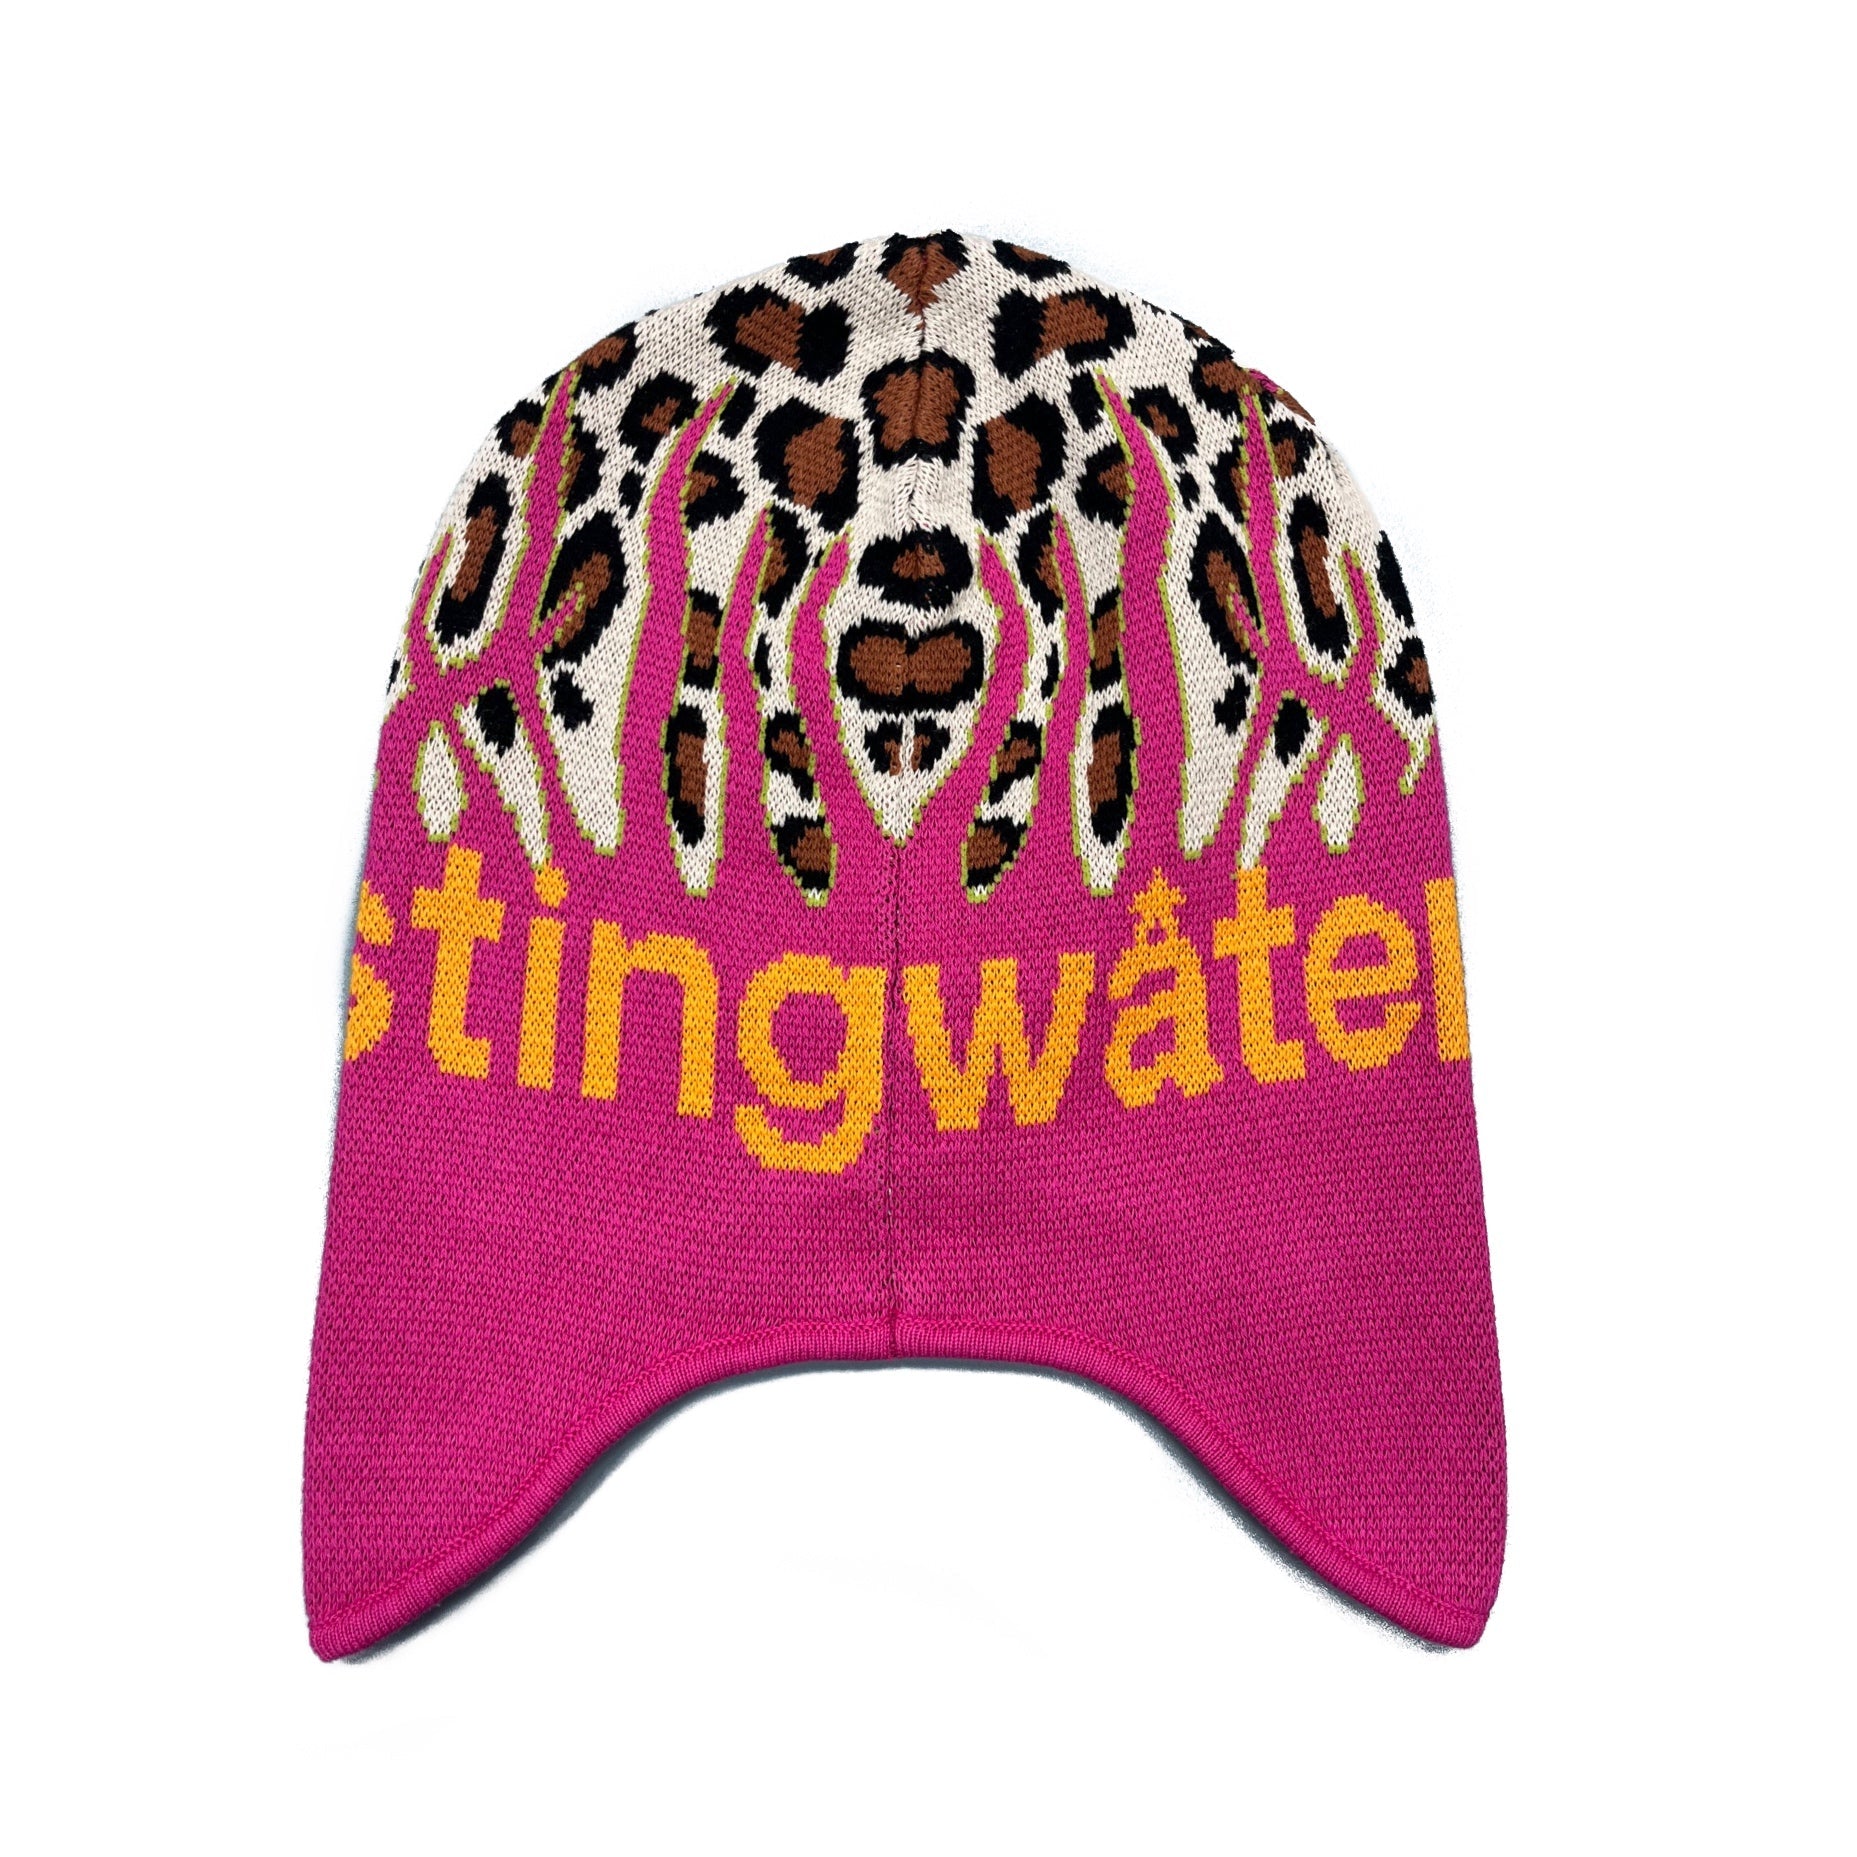 Stingwater In The Tall Grass Beanie - Cheetah – Ninetimes Skateshop